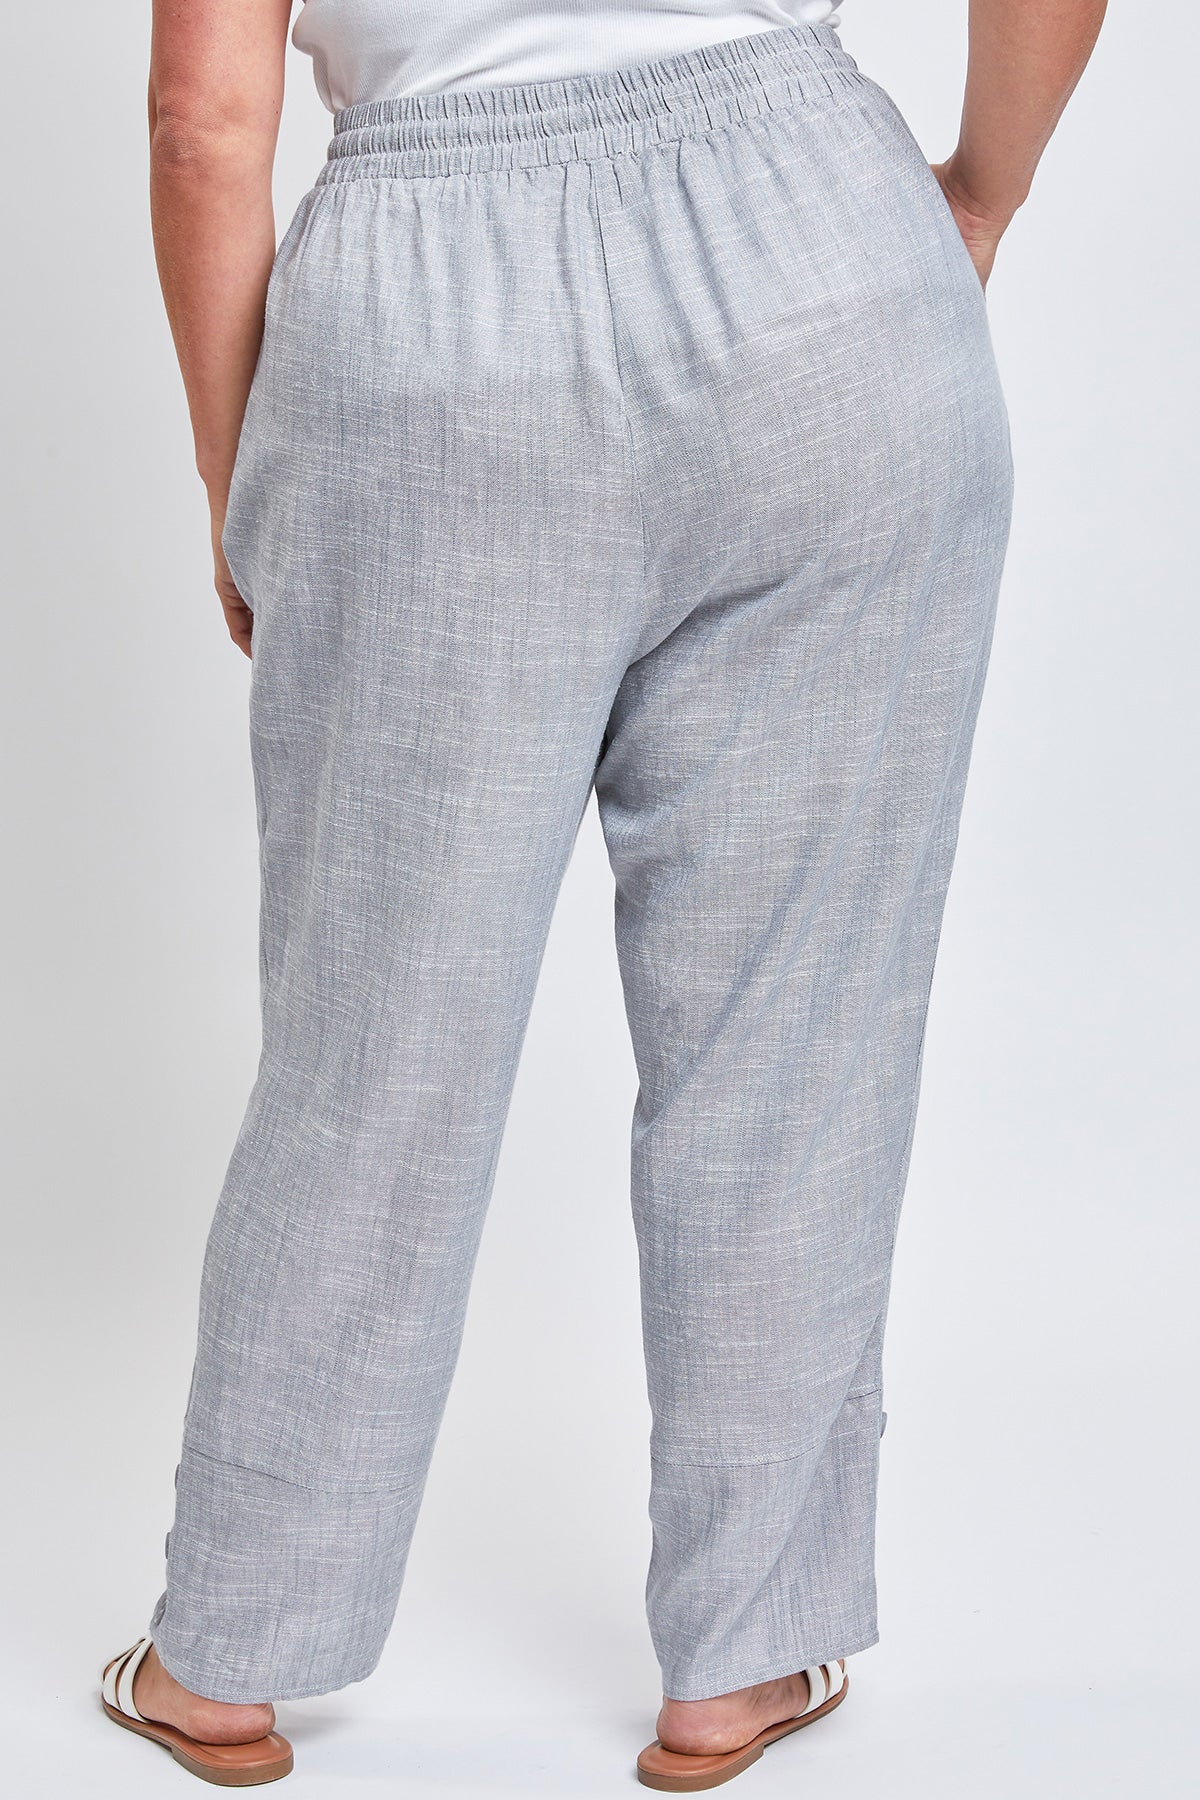 Women's Plus Size Button Hem Linen Flood Pants